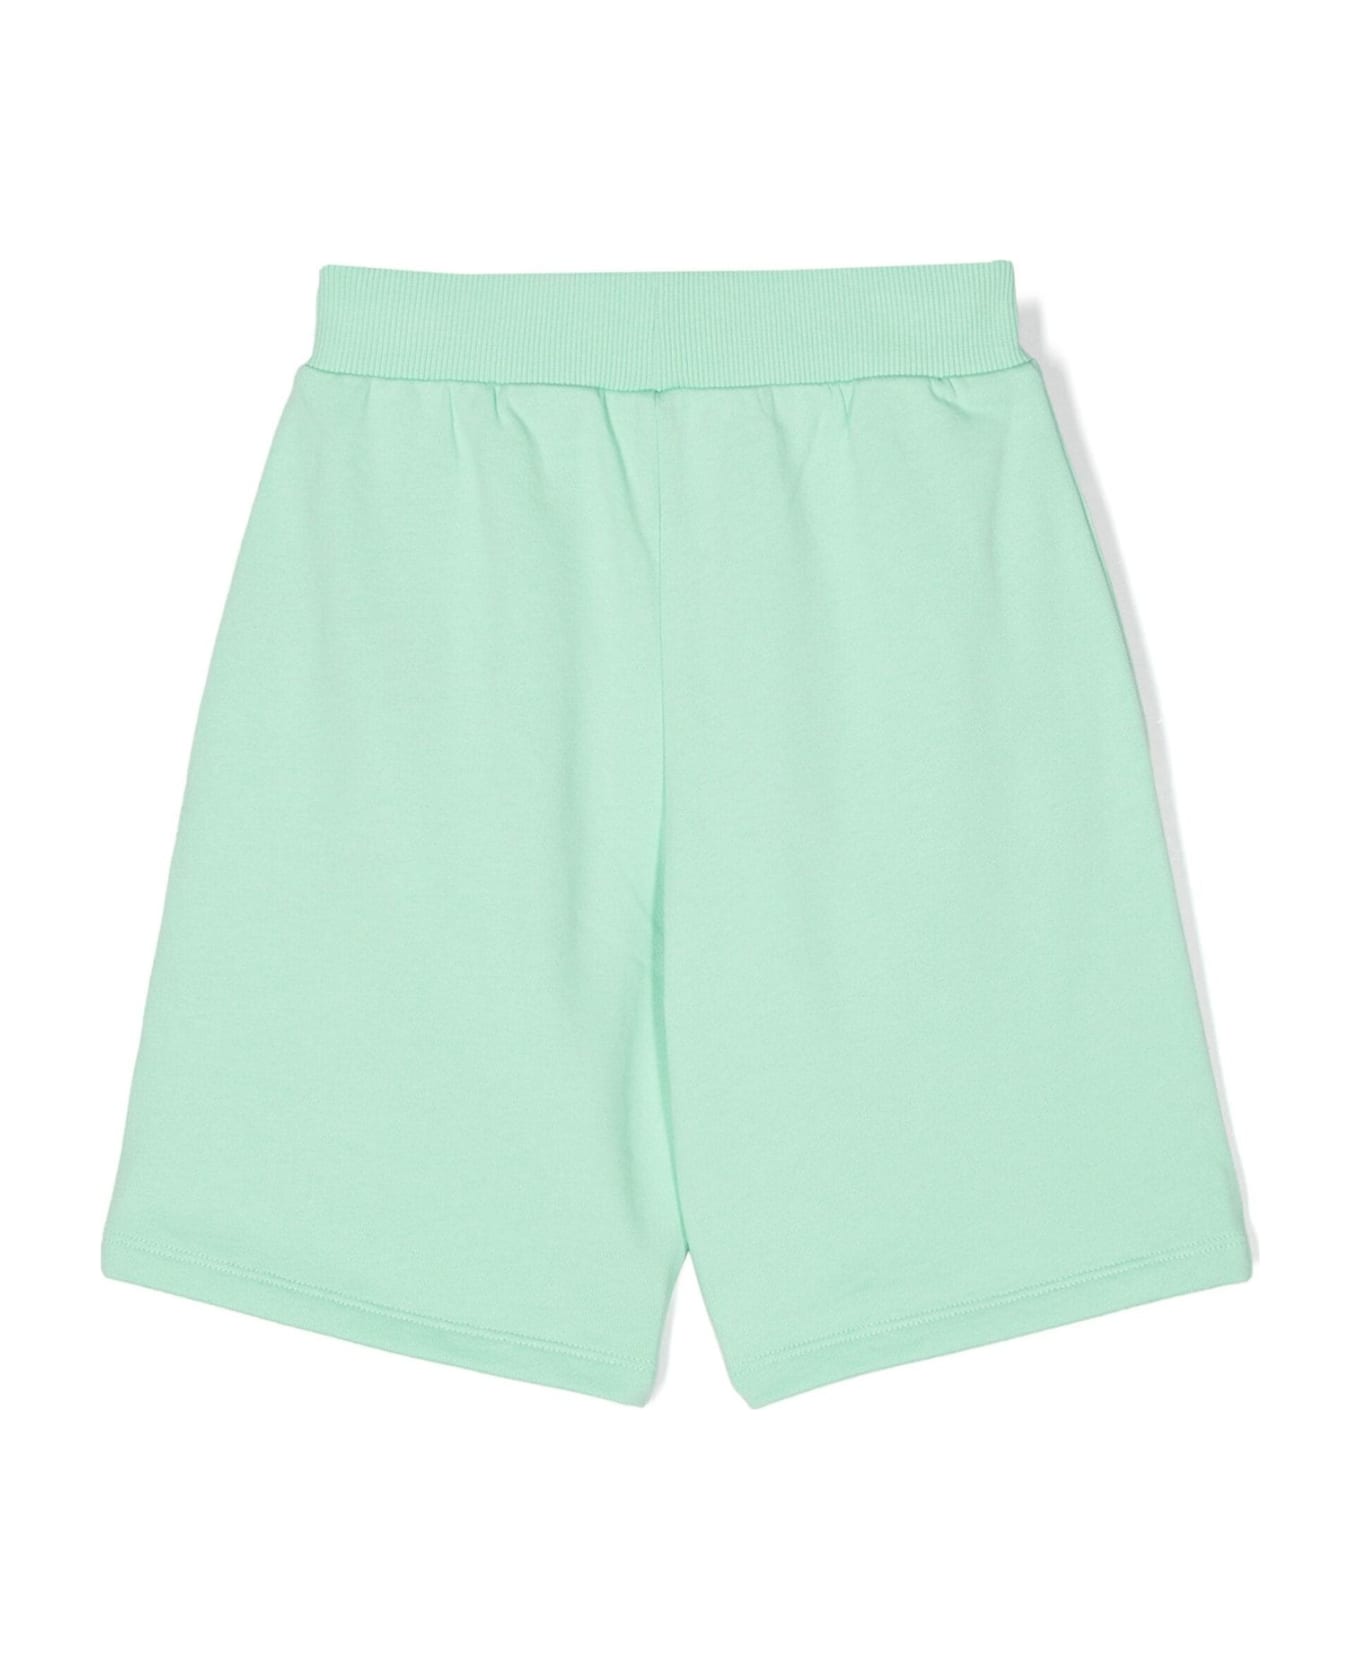 Balmain Shorts Green - Green